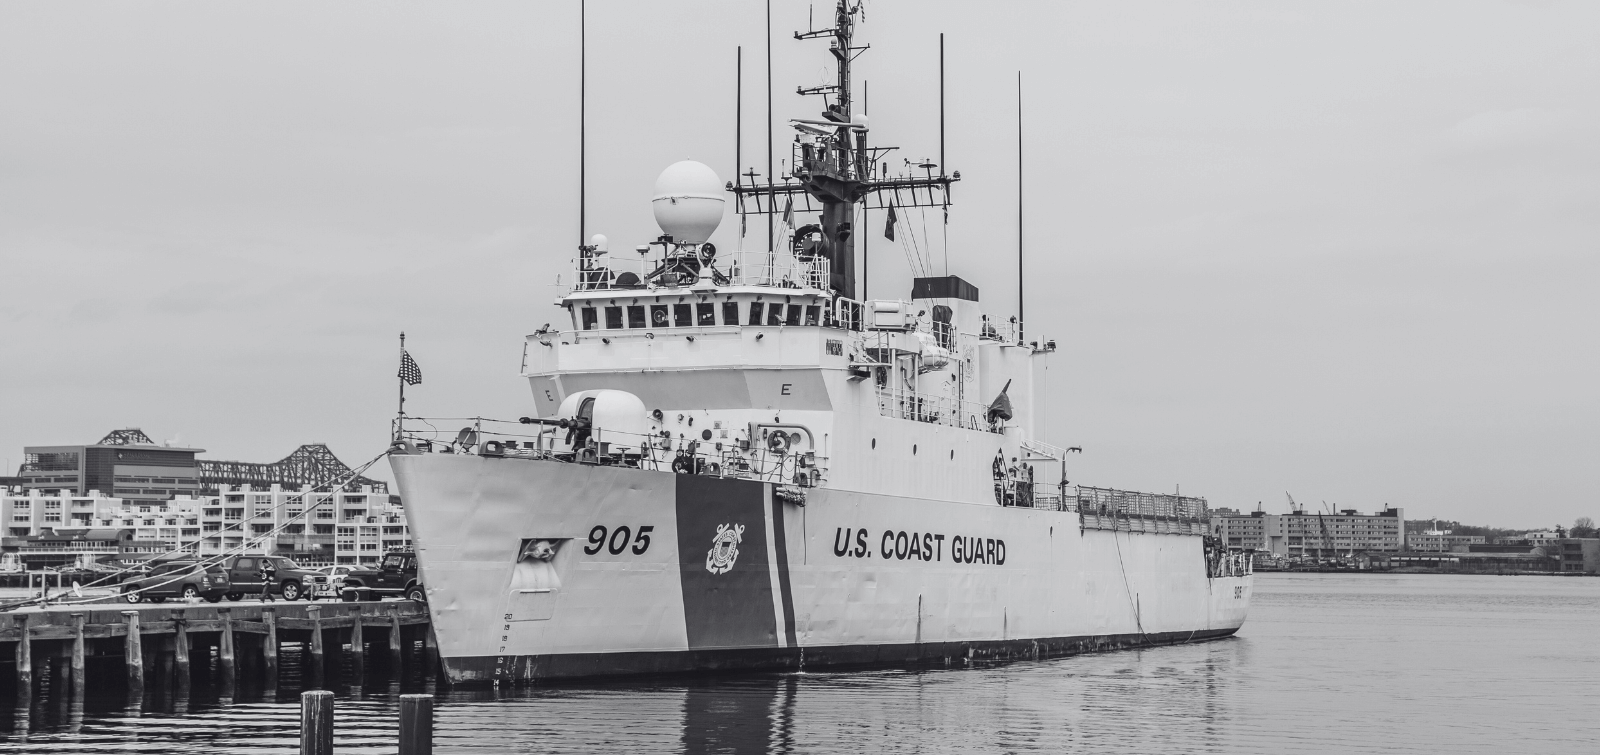 United States Coast Guard ship at dock